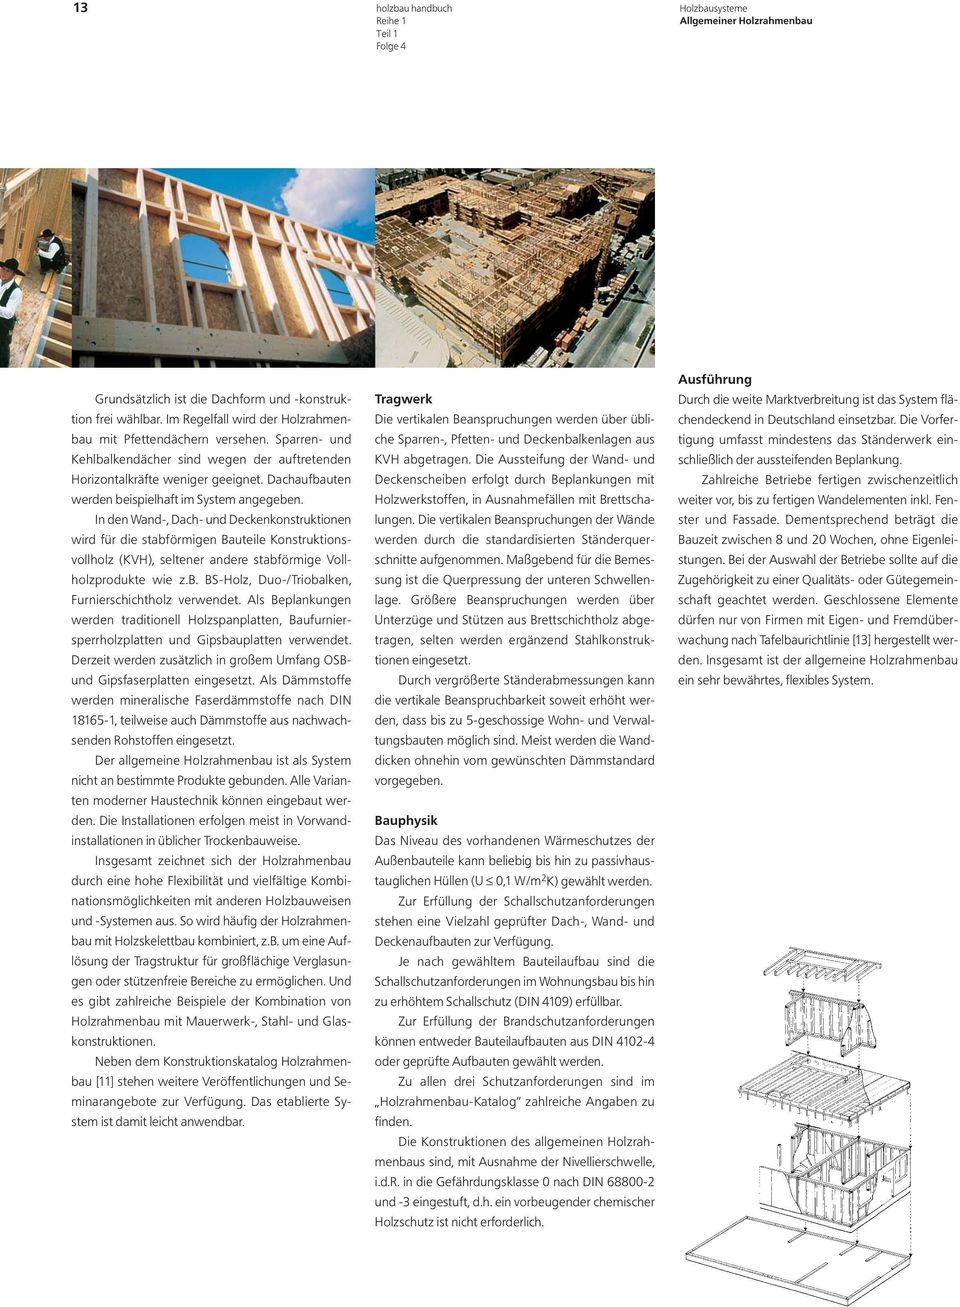 In den Wand-, Dach- und Deckenkonstruktionen wird für die stabförmigen Bauteile Konstruktionsvollholz (KVH), seltener andere stabförmige Vollholzprodukte wie z.b. BS-Holz, Duo-/Triobalken, Furnierschichtholz verwendet.